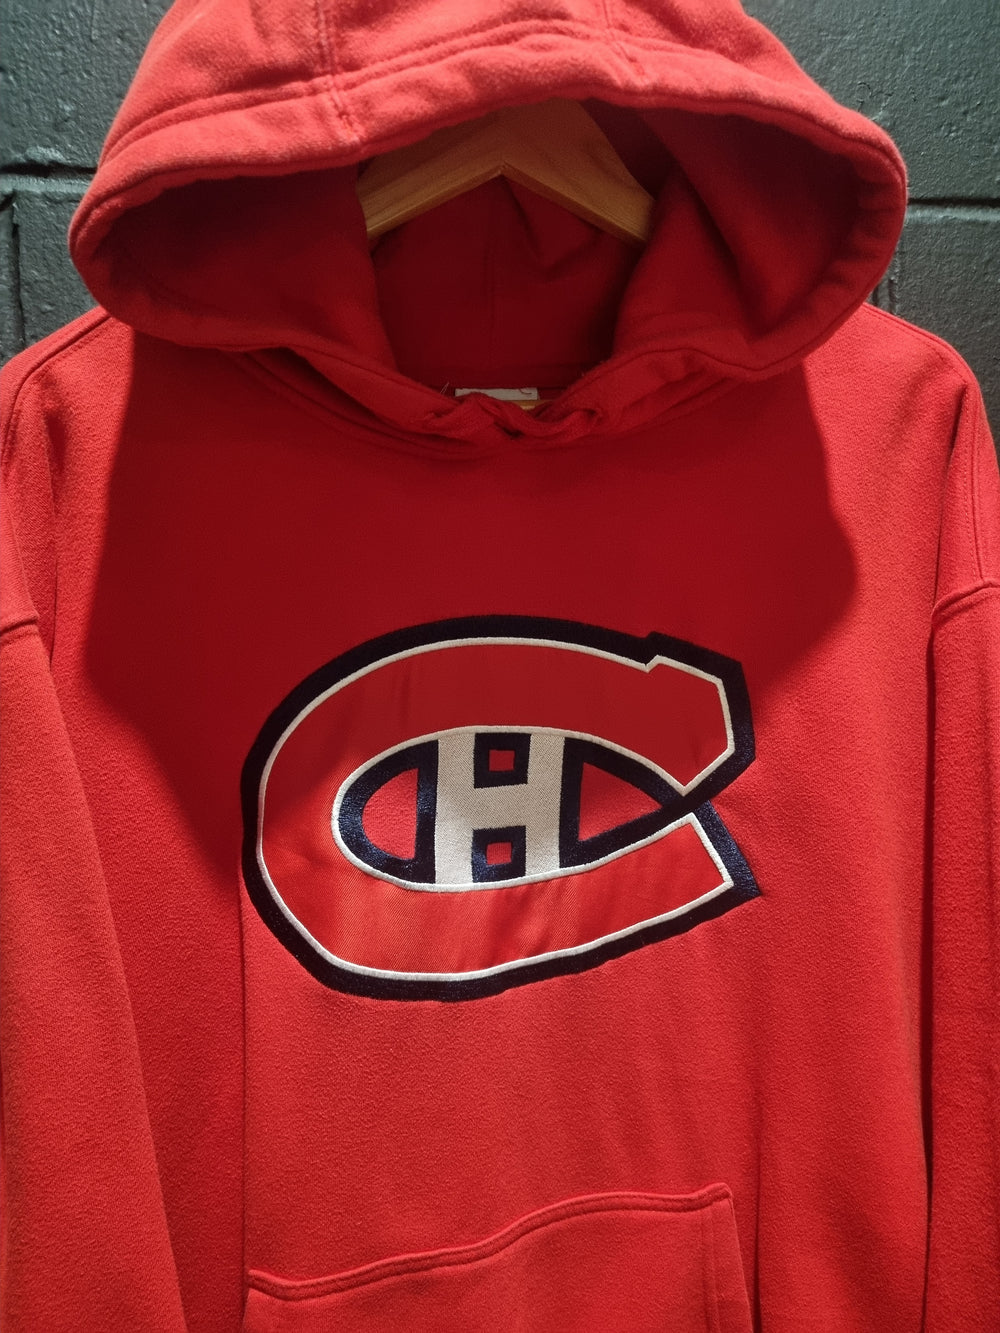 Montreal Canadiens Hoodie Large